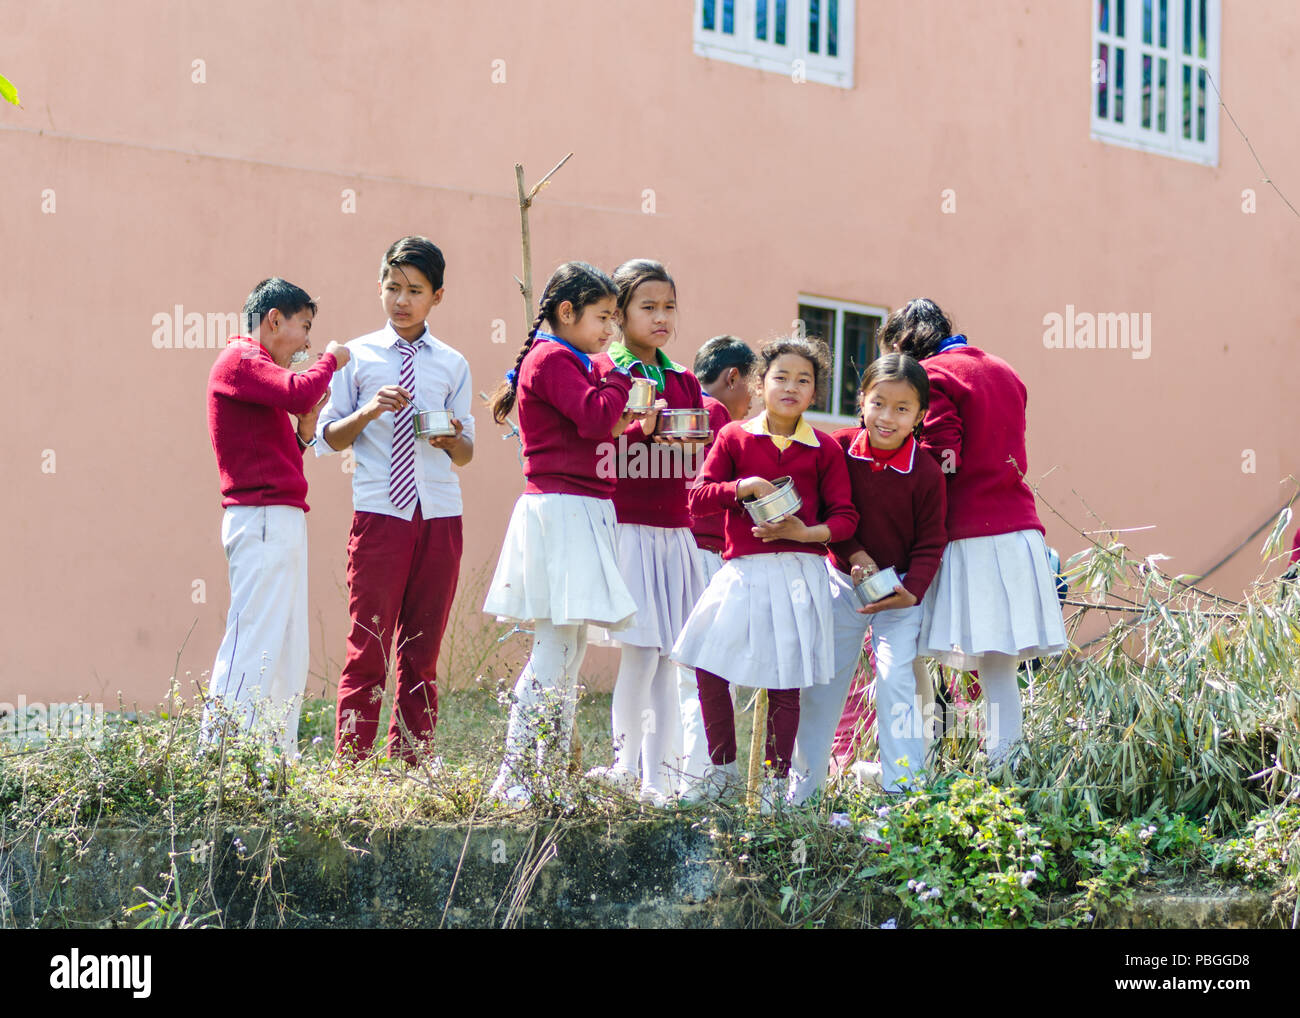 Écoliers en uniforme pendant la pause déjeuner dans les régions rurales du Népal Banque D'Images